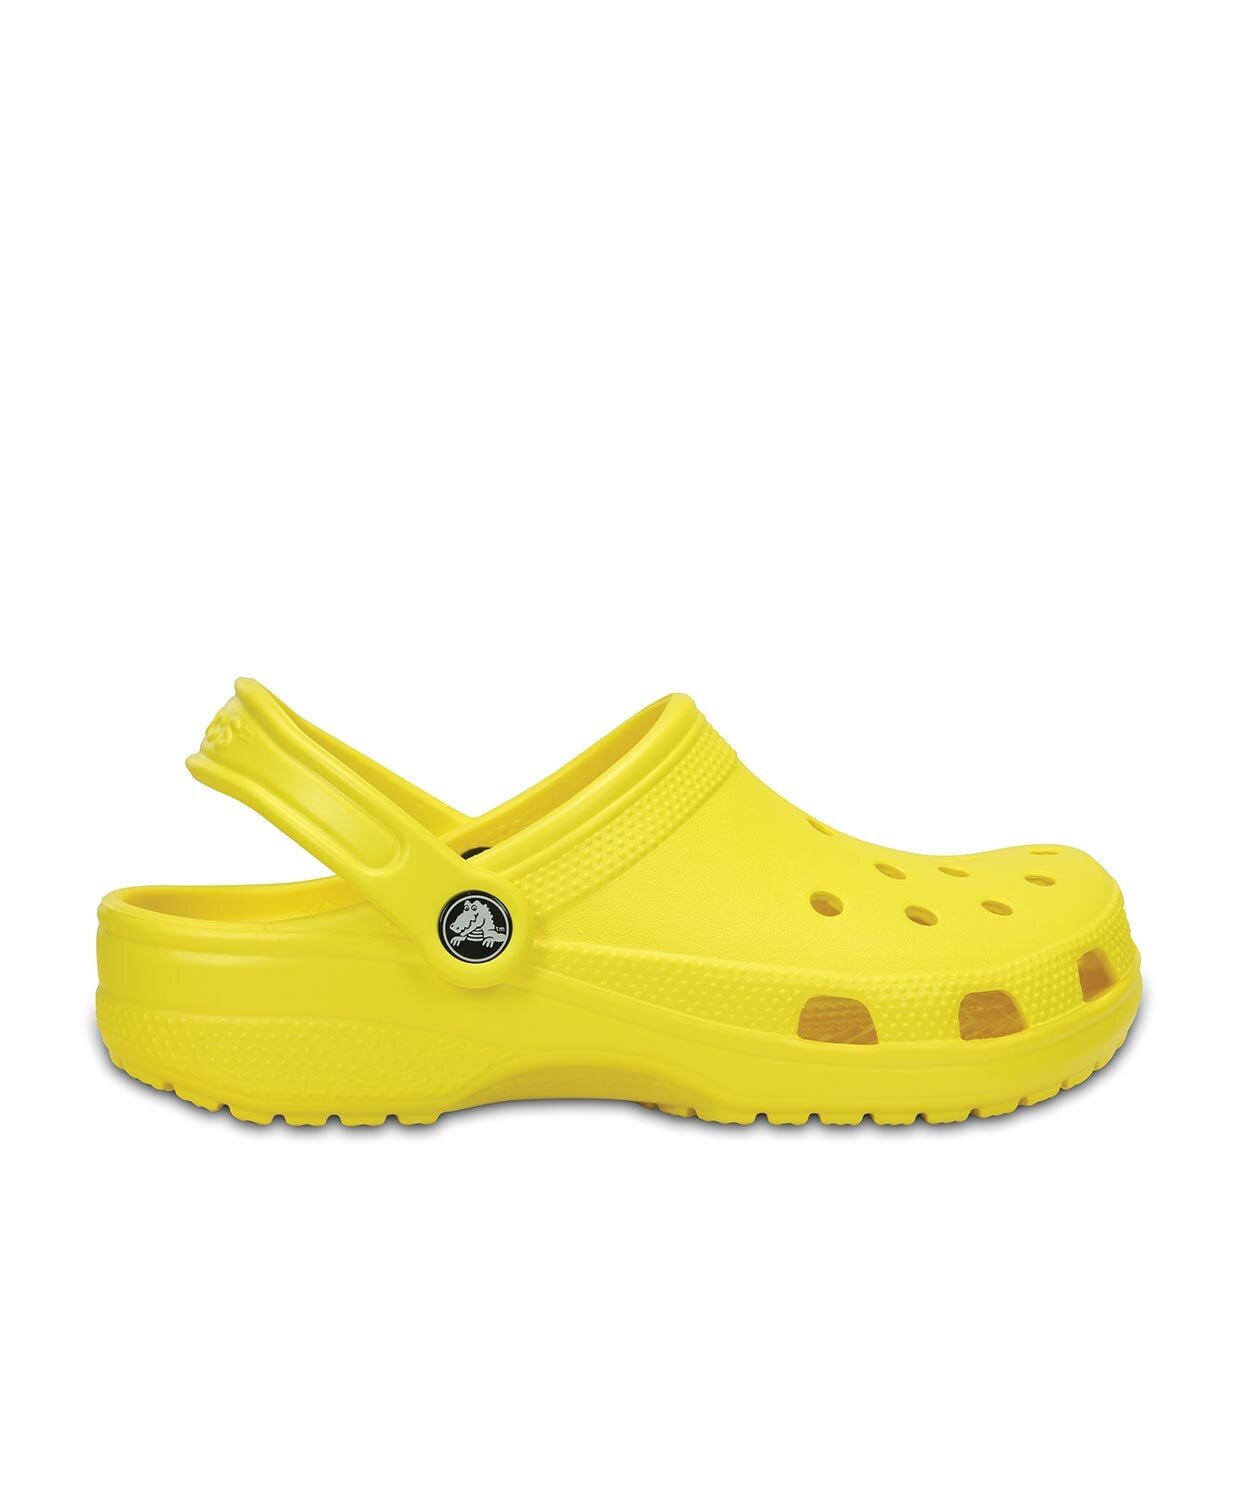 resm Crocs Classic Clog